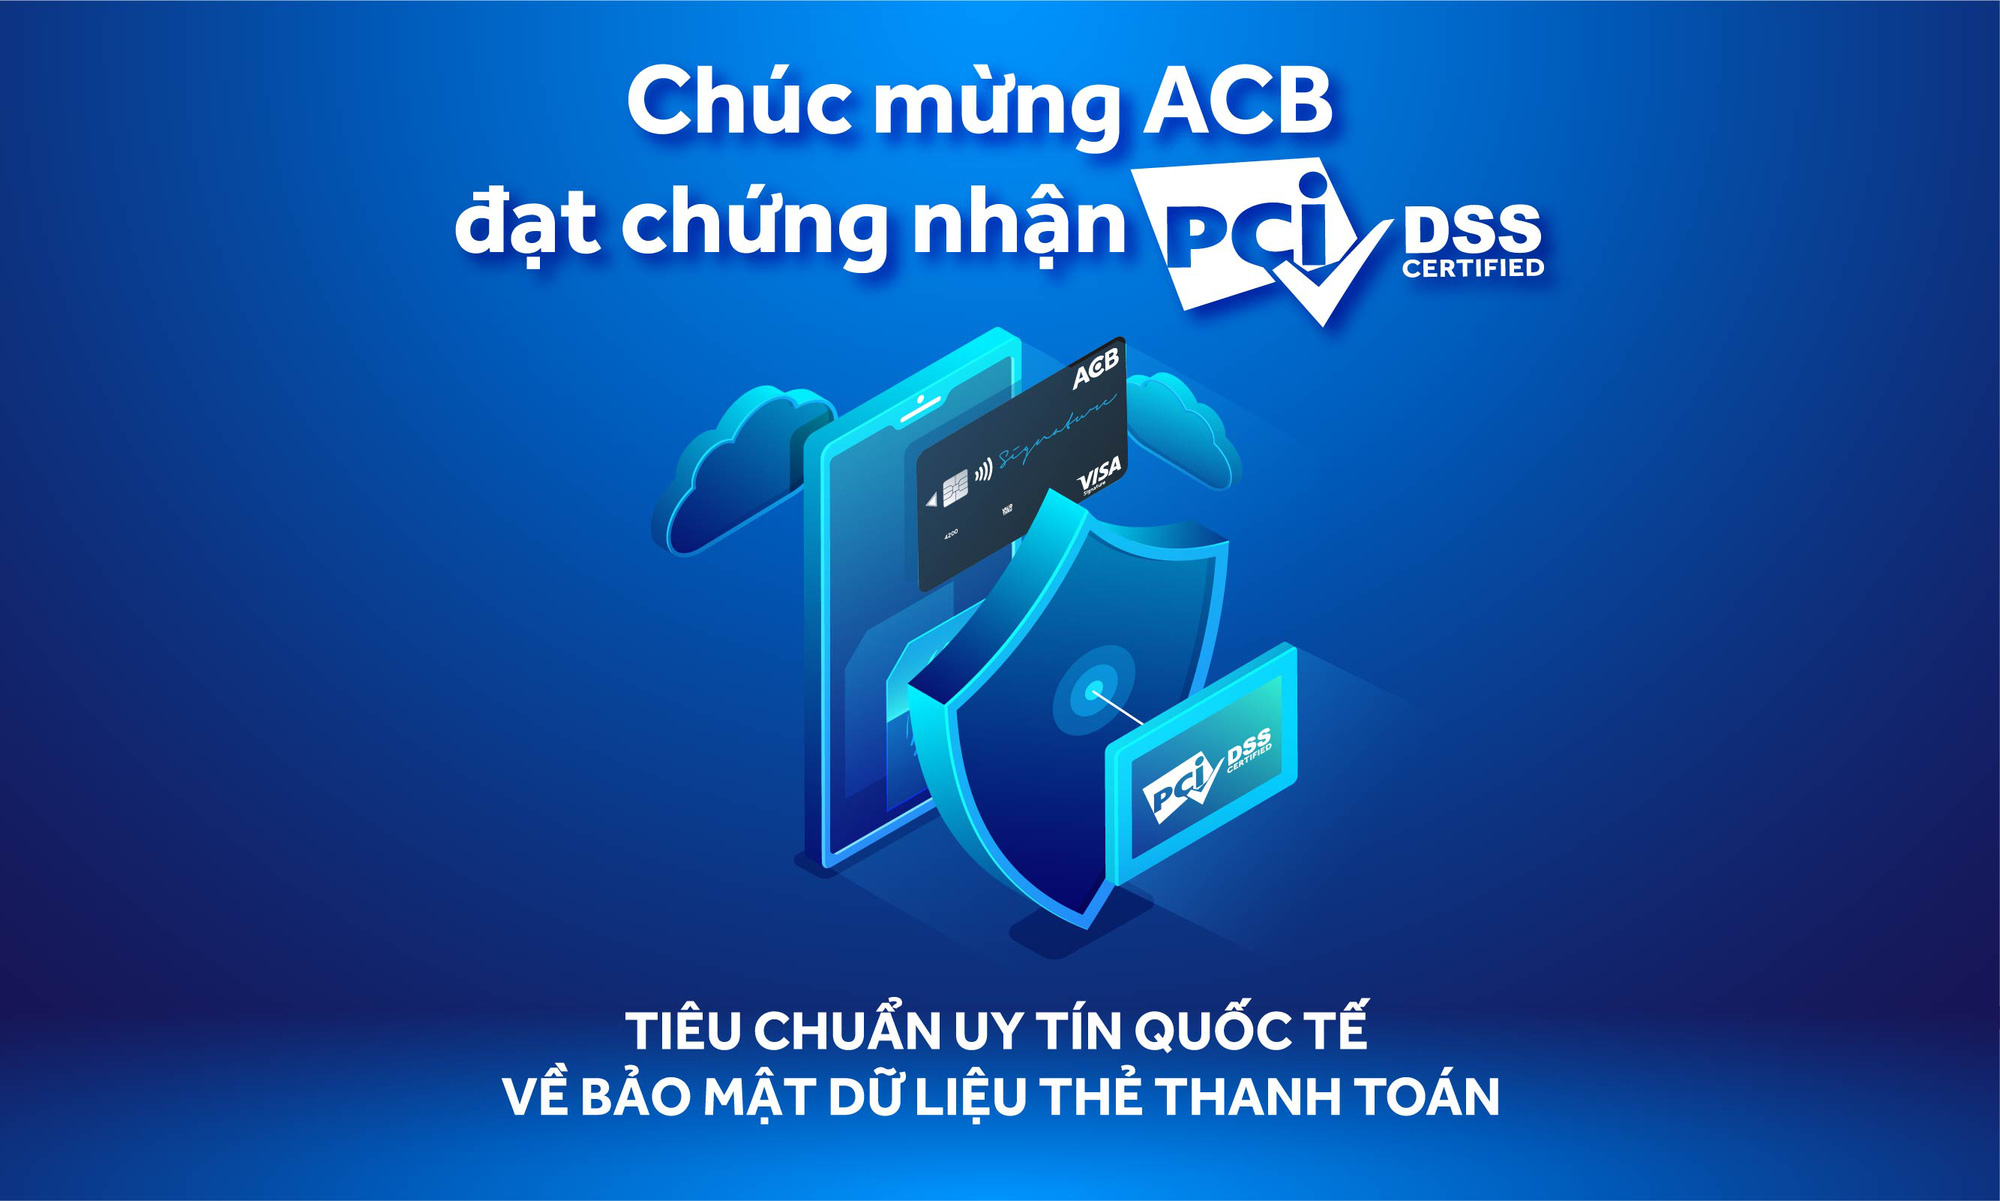 ACB đạt chứng nhận PCI DSS – tiêu chuẩn uy tín quốc tế về bảo mật dữ liệu thẻ thanh toán - Ảnh 1.